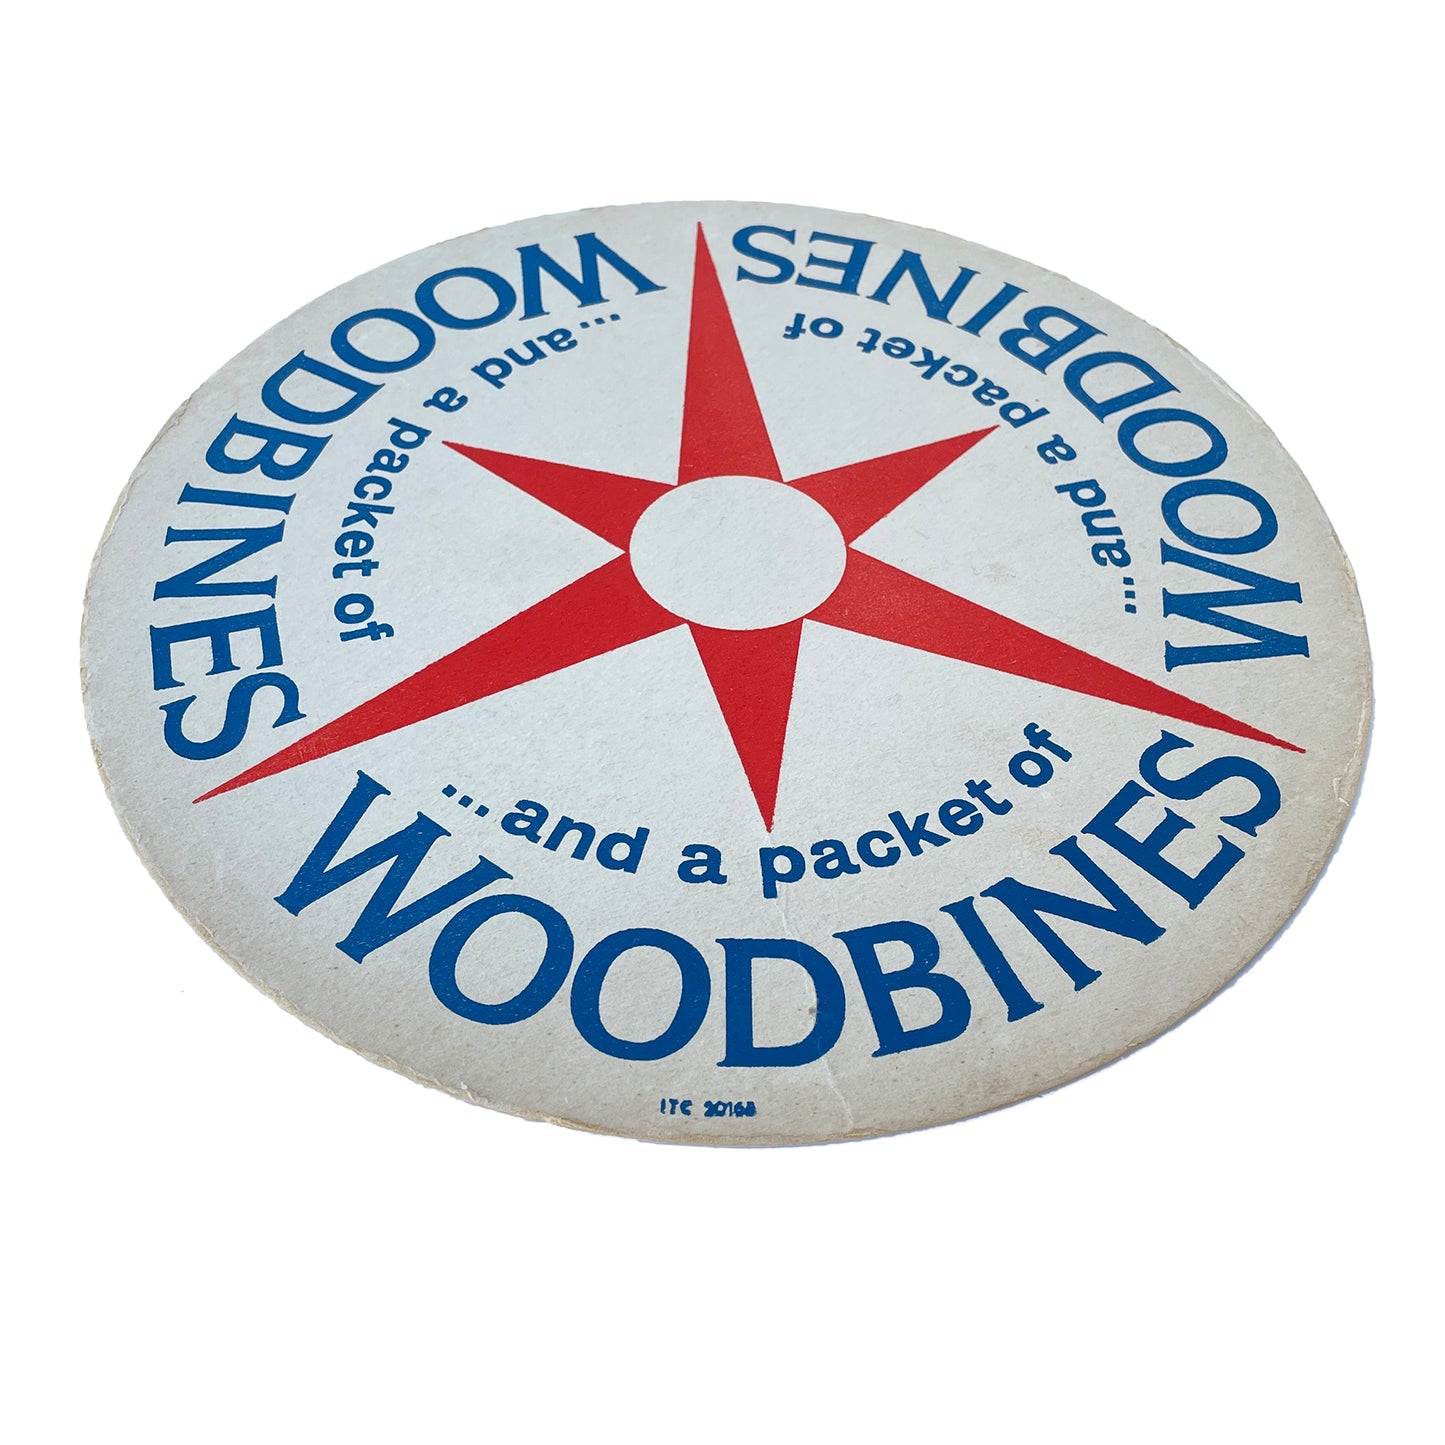 Vintage ‘Woodbines’ Card Advertising Mat - Sukie